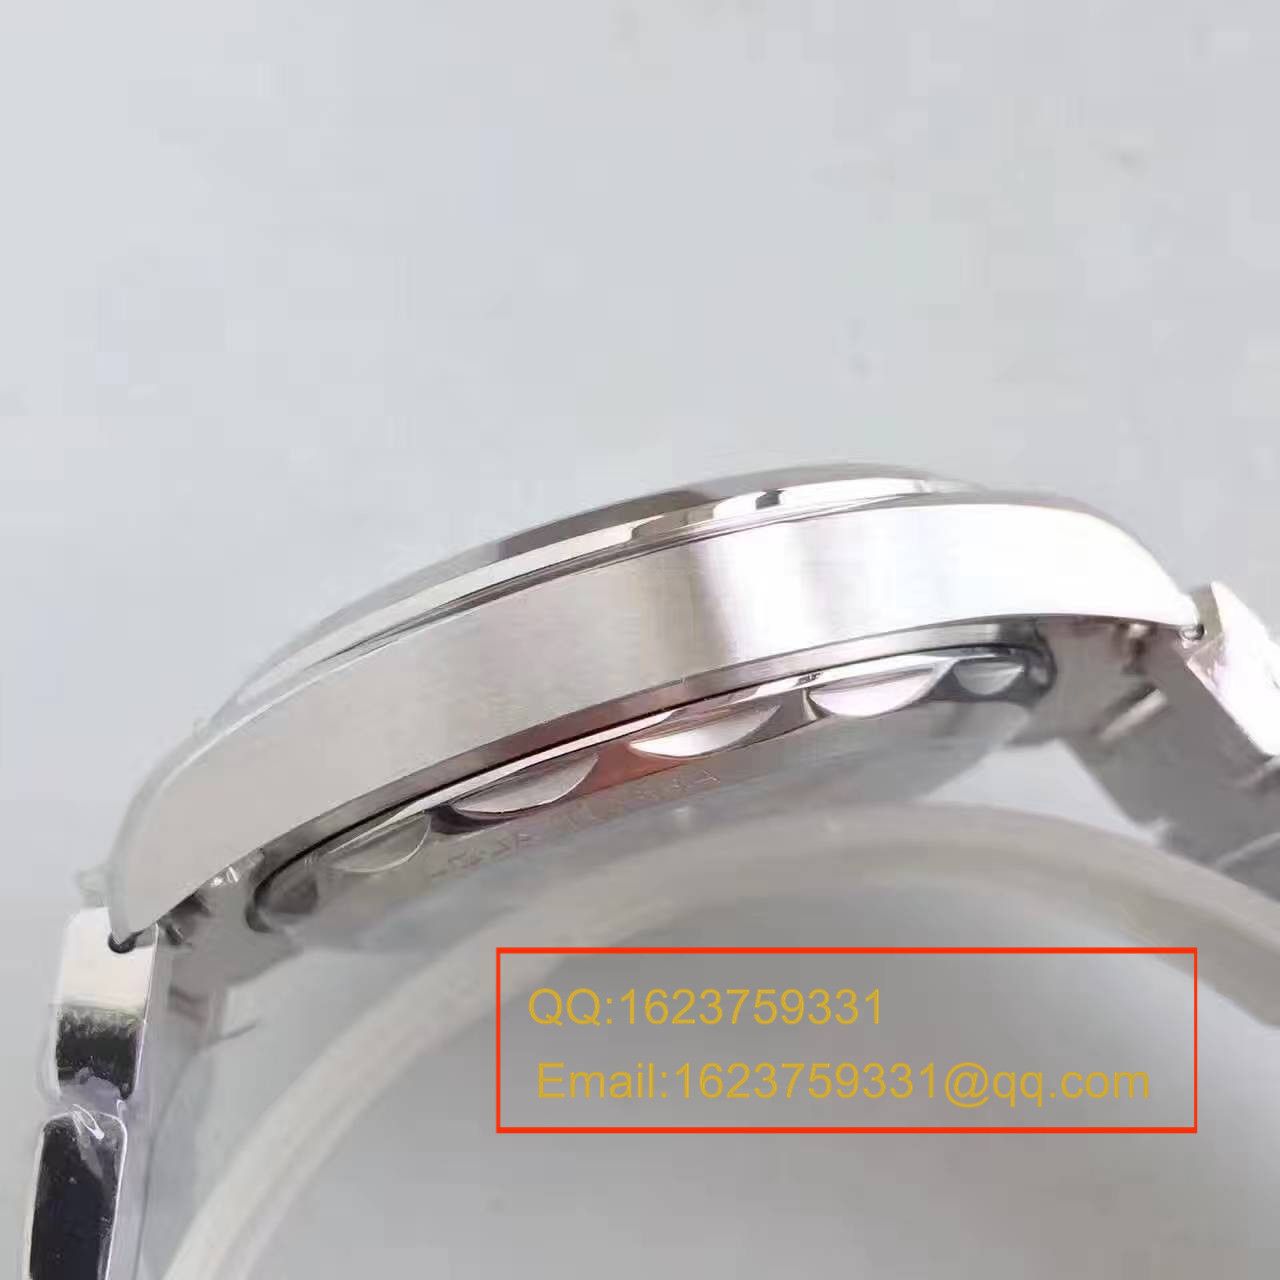 【XF厂一比一超A高仿手表】欧米茄海马系列220.12.41.21.02.001腕表 / M293